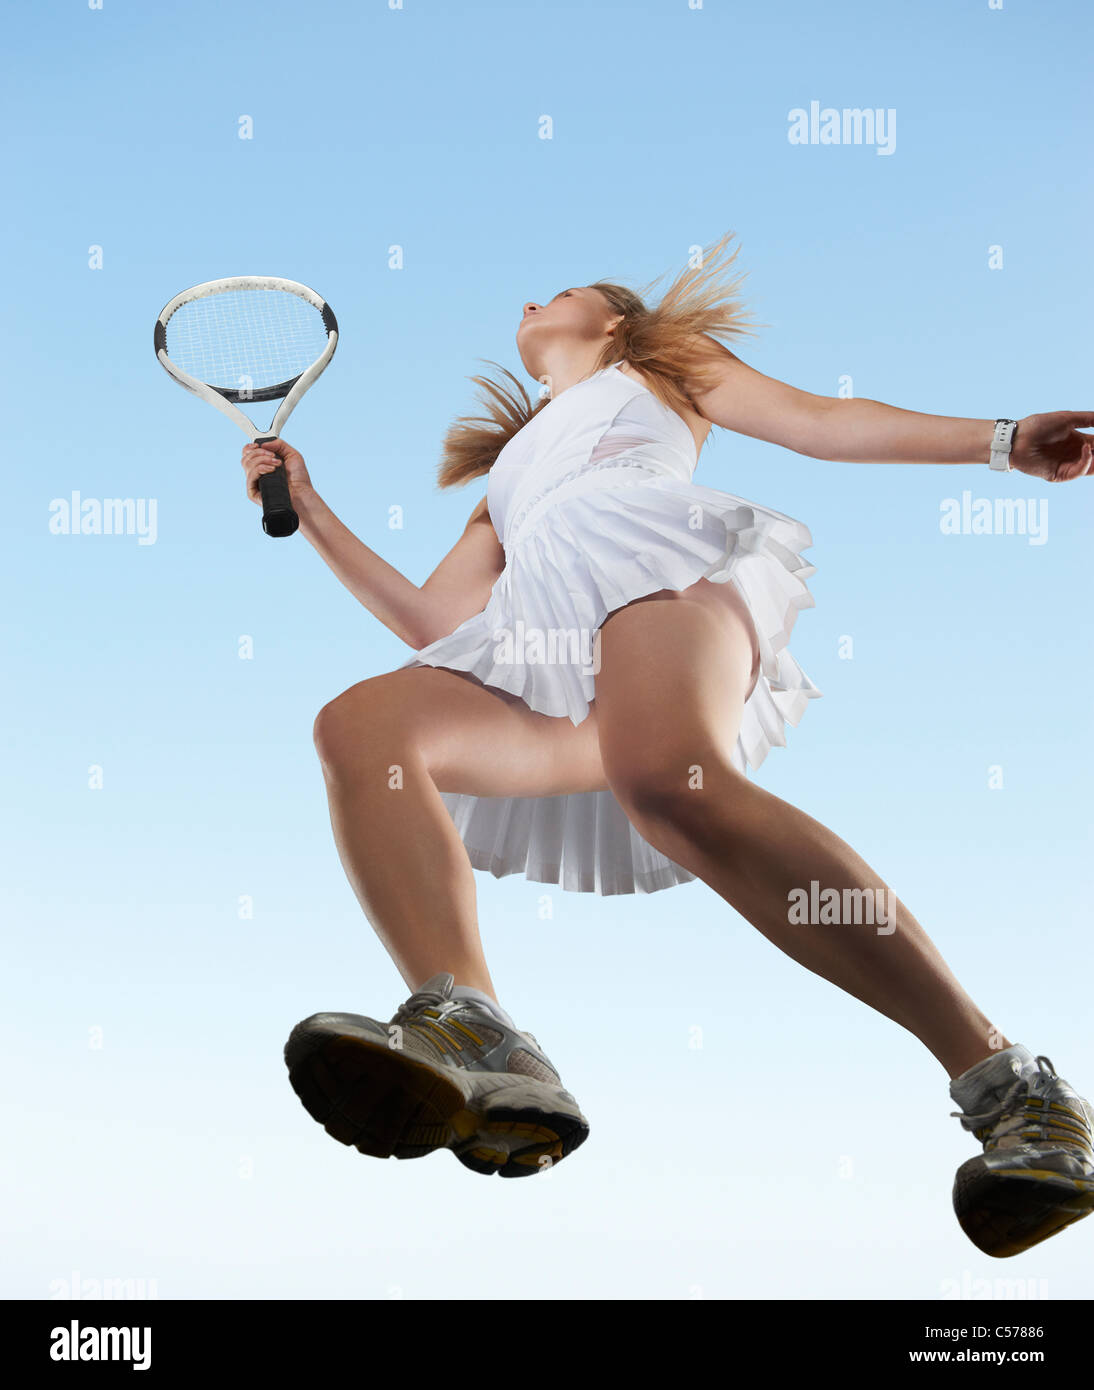 Niedrigen Winkel Ansicht der Frau, die Tennis spielen Stockfoto